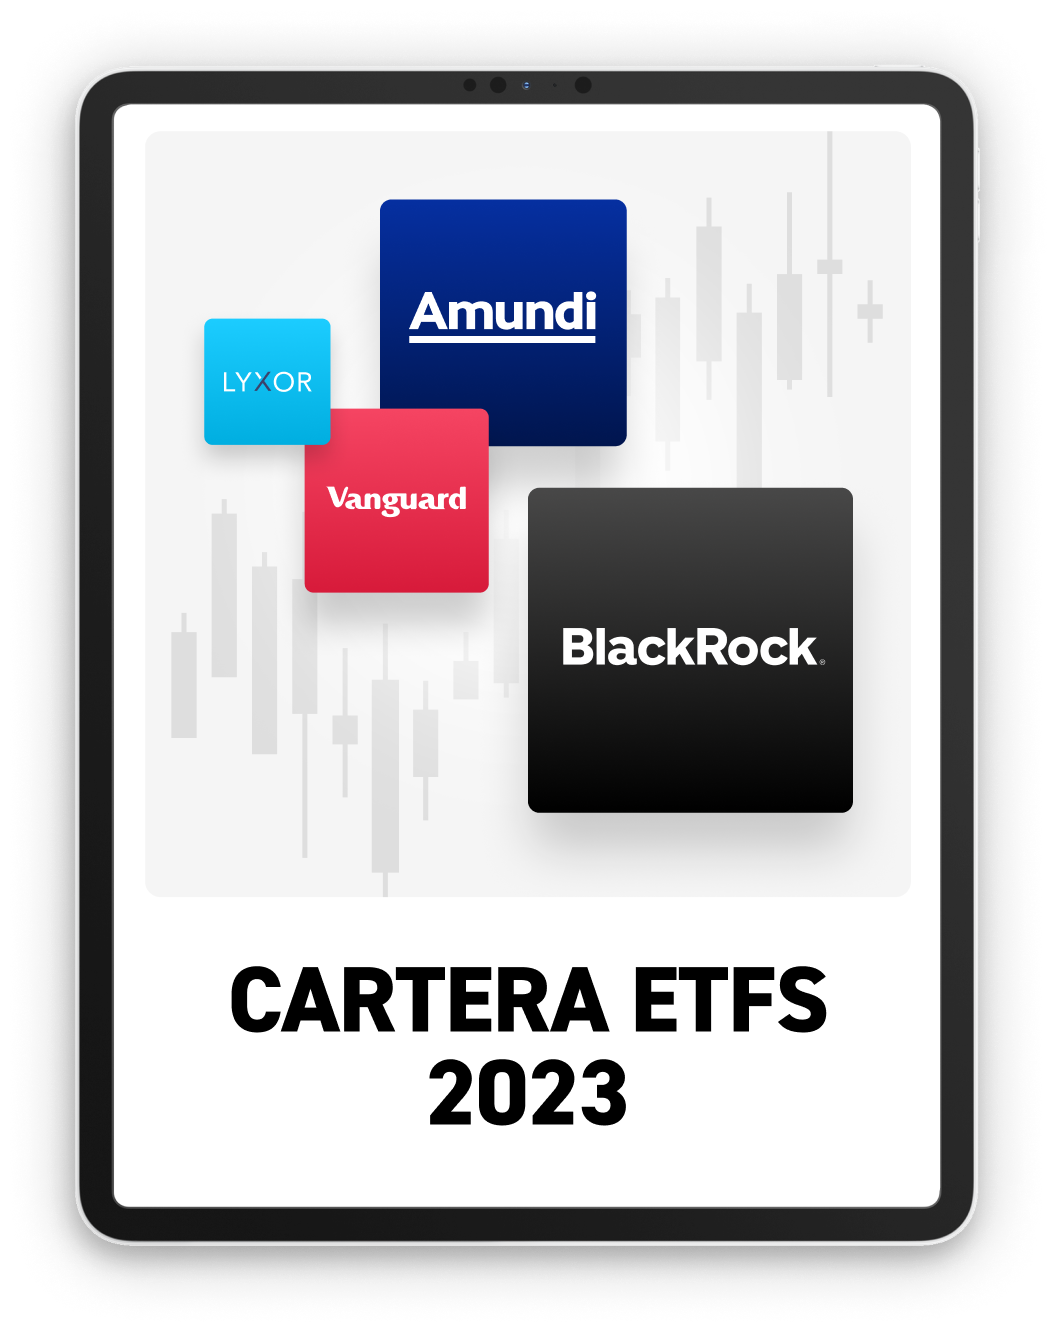 CARTERA ETFs 2023